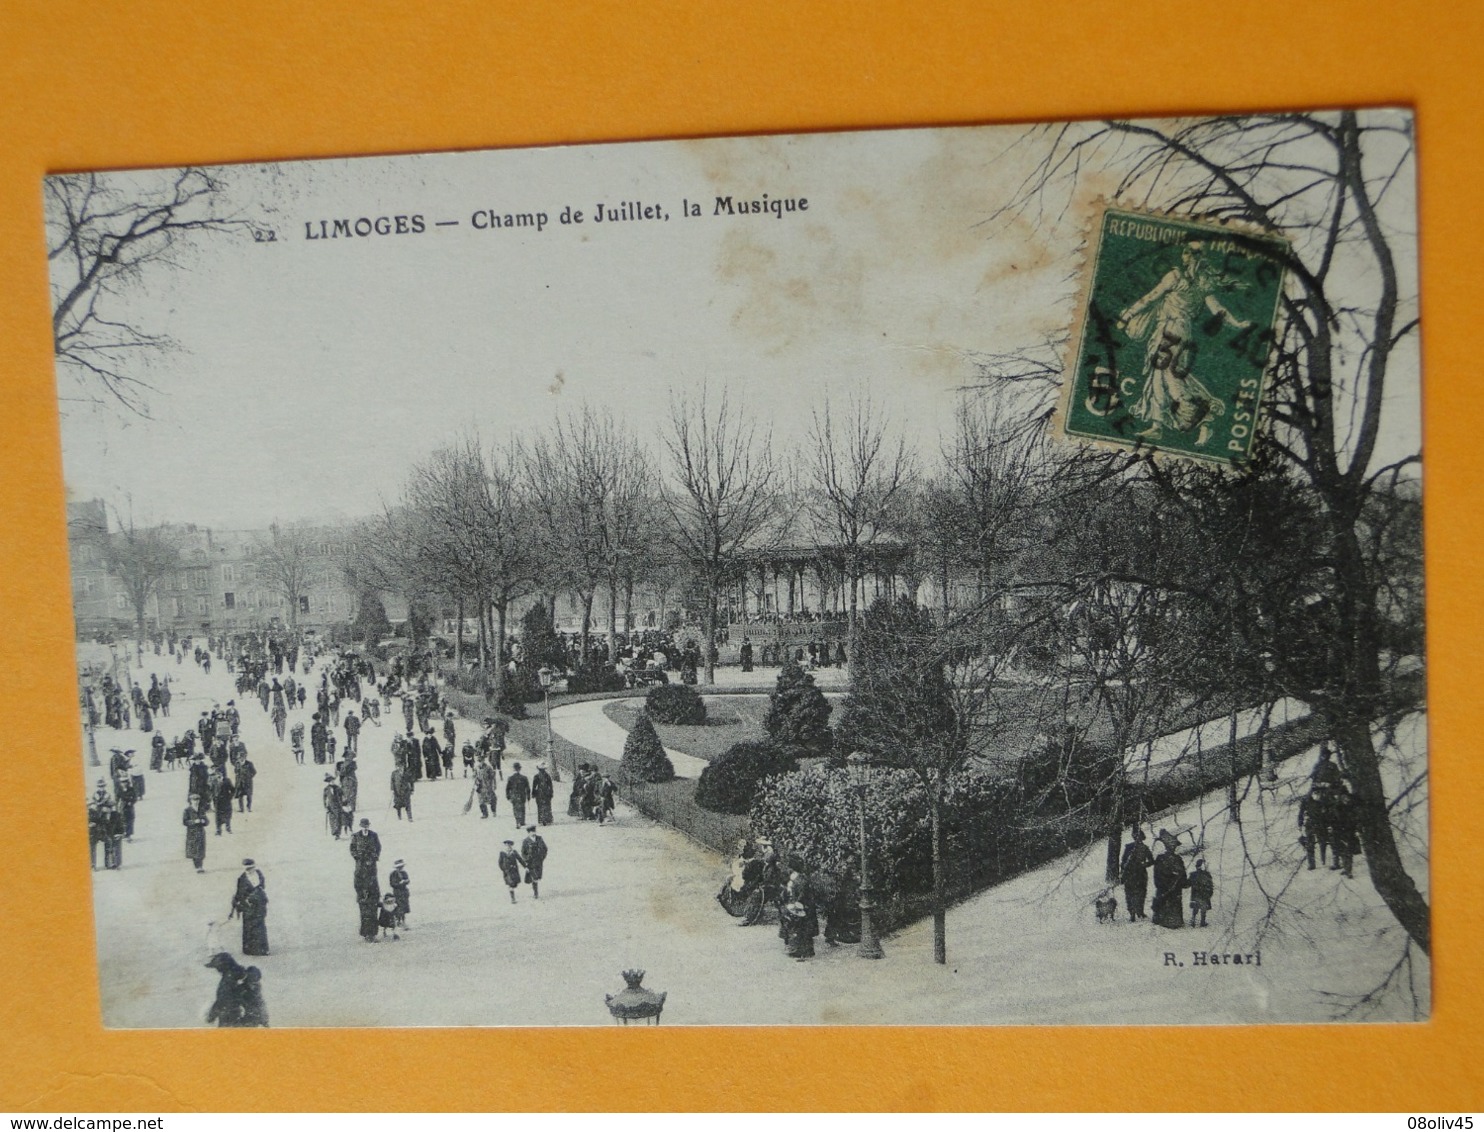 Joli Lot de 50 Cartes Postales Anciennes FRANCE  -- TOUTES ANIMEES - Voir les 50 scans - Lot N° 1